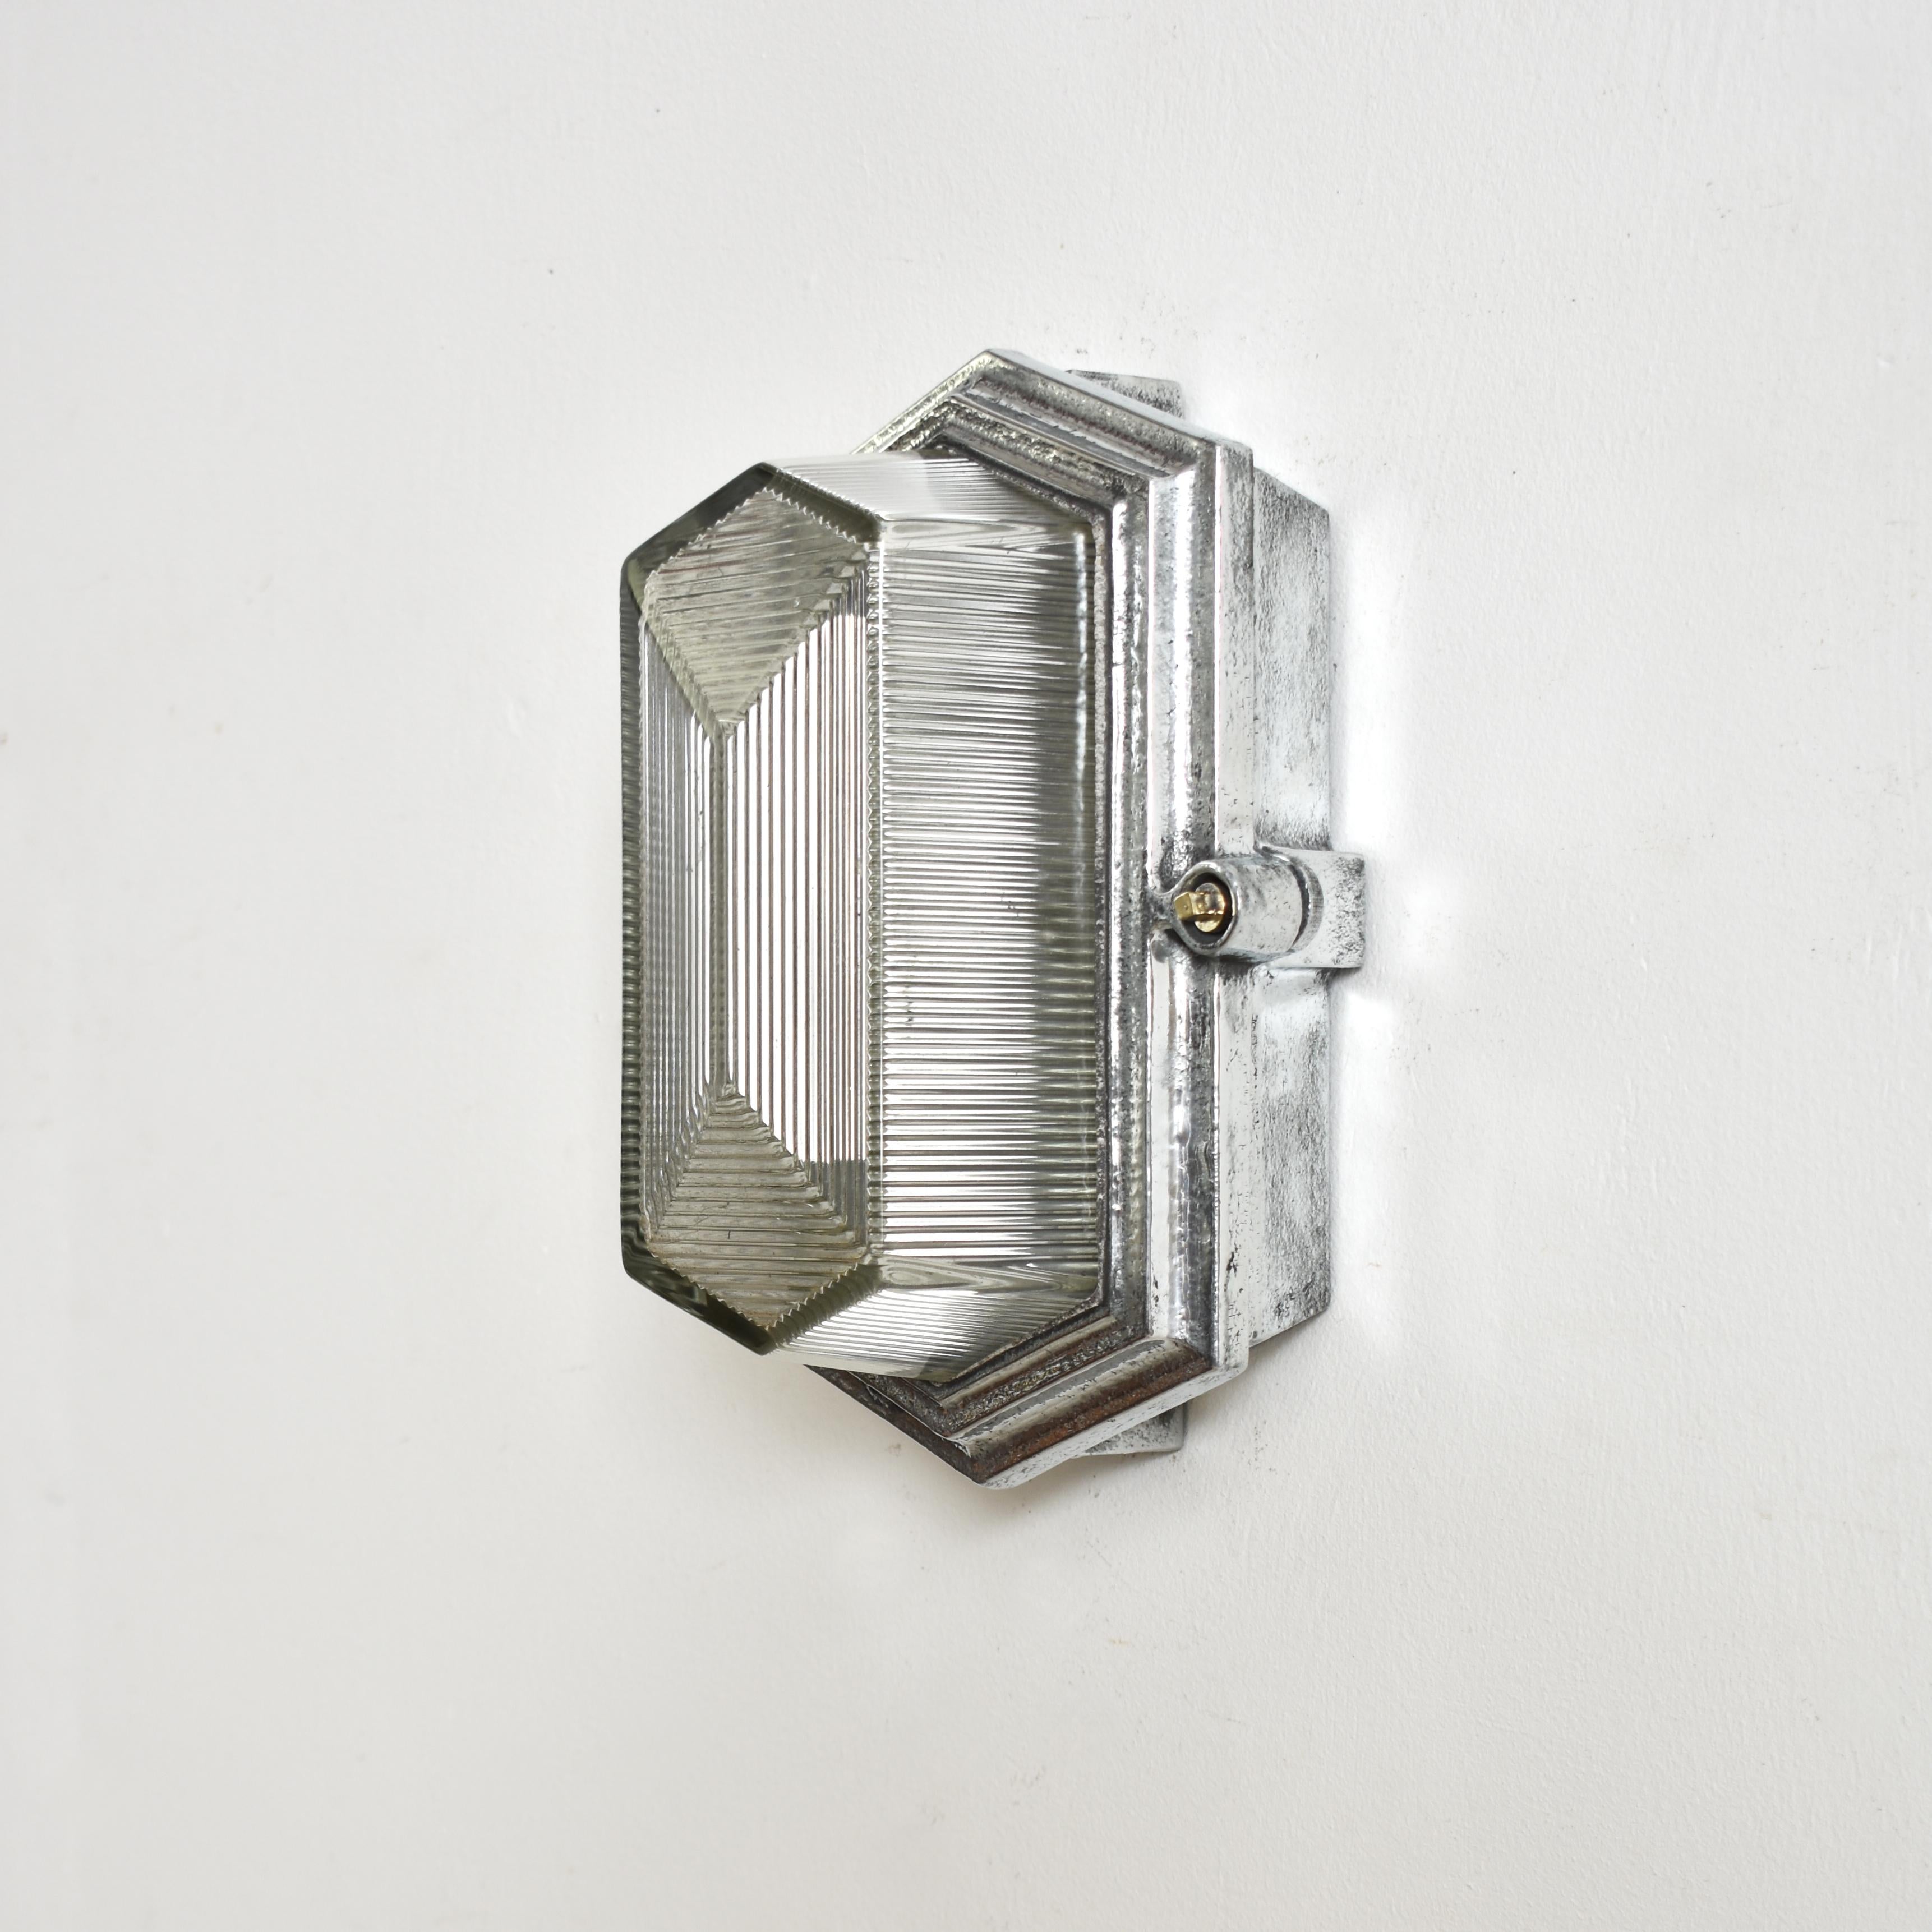 Antike Maxlume Industrielle Glühbirnenlampe, polierte Wandleuchte für das Badezimmer

Eine originale Gussstahl-Schottleuchte der Firma Maxlume, die ursprünglich in einer Lackiererei eingesetzt wurde und aus einer linearen prismatischen